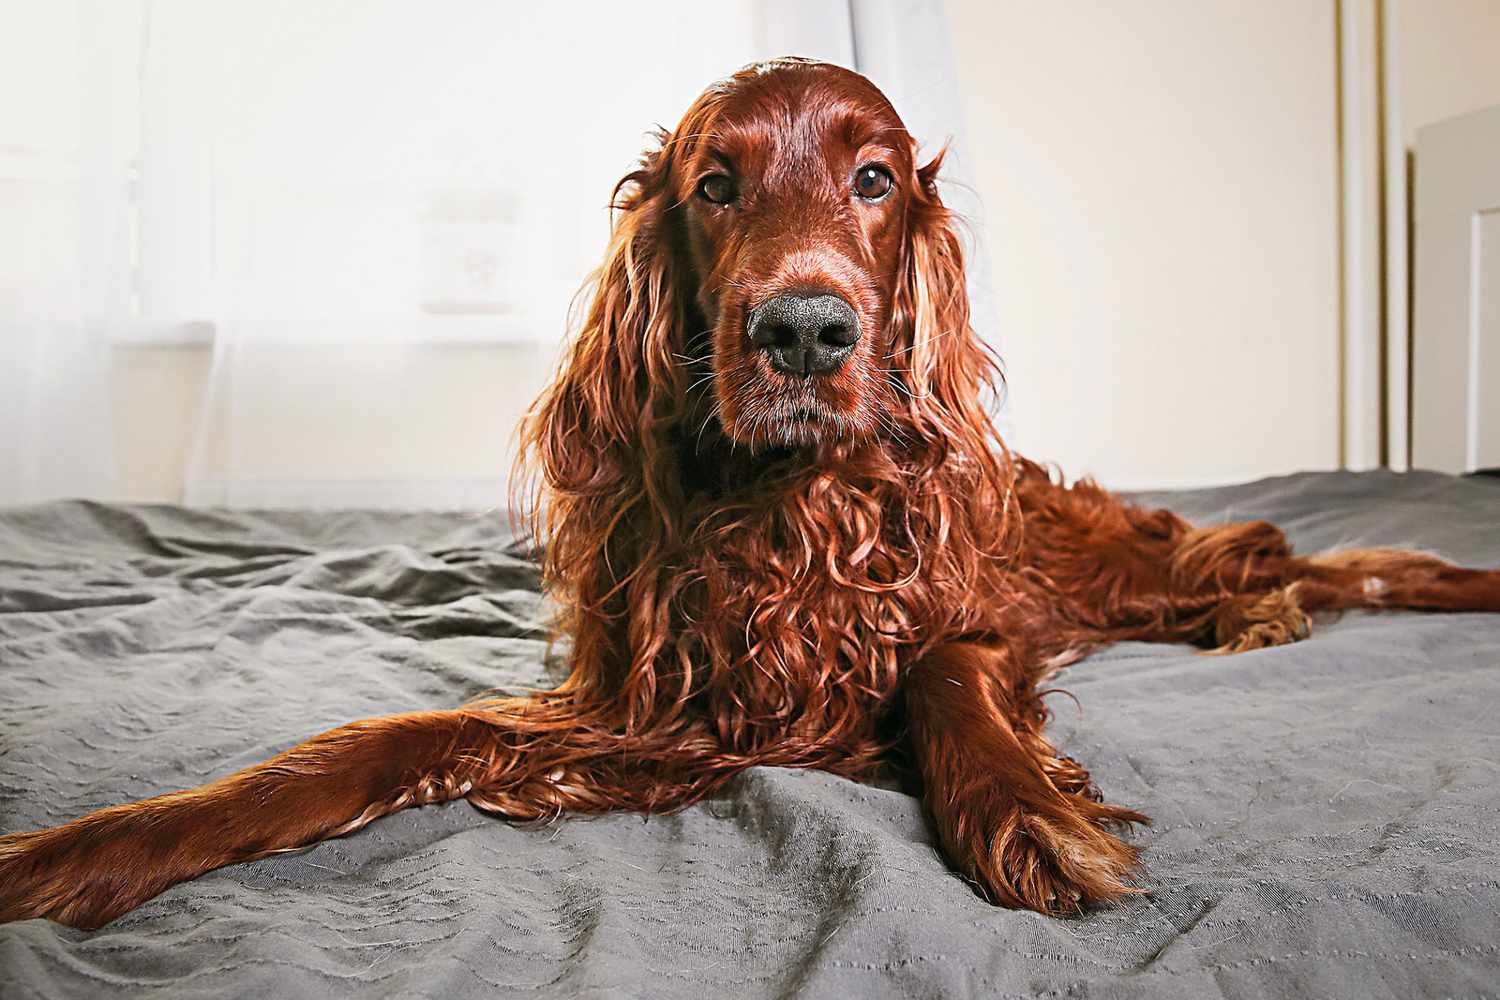 irish setter dog lying on bed on grey sheets